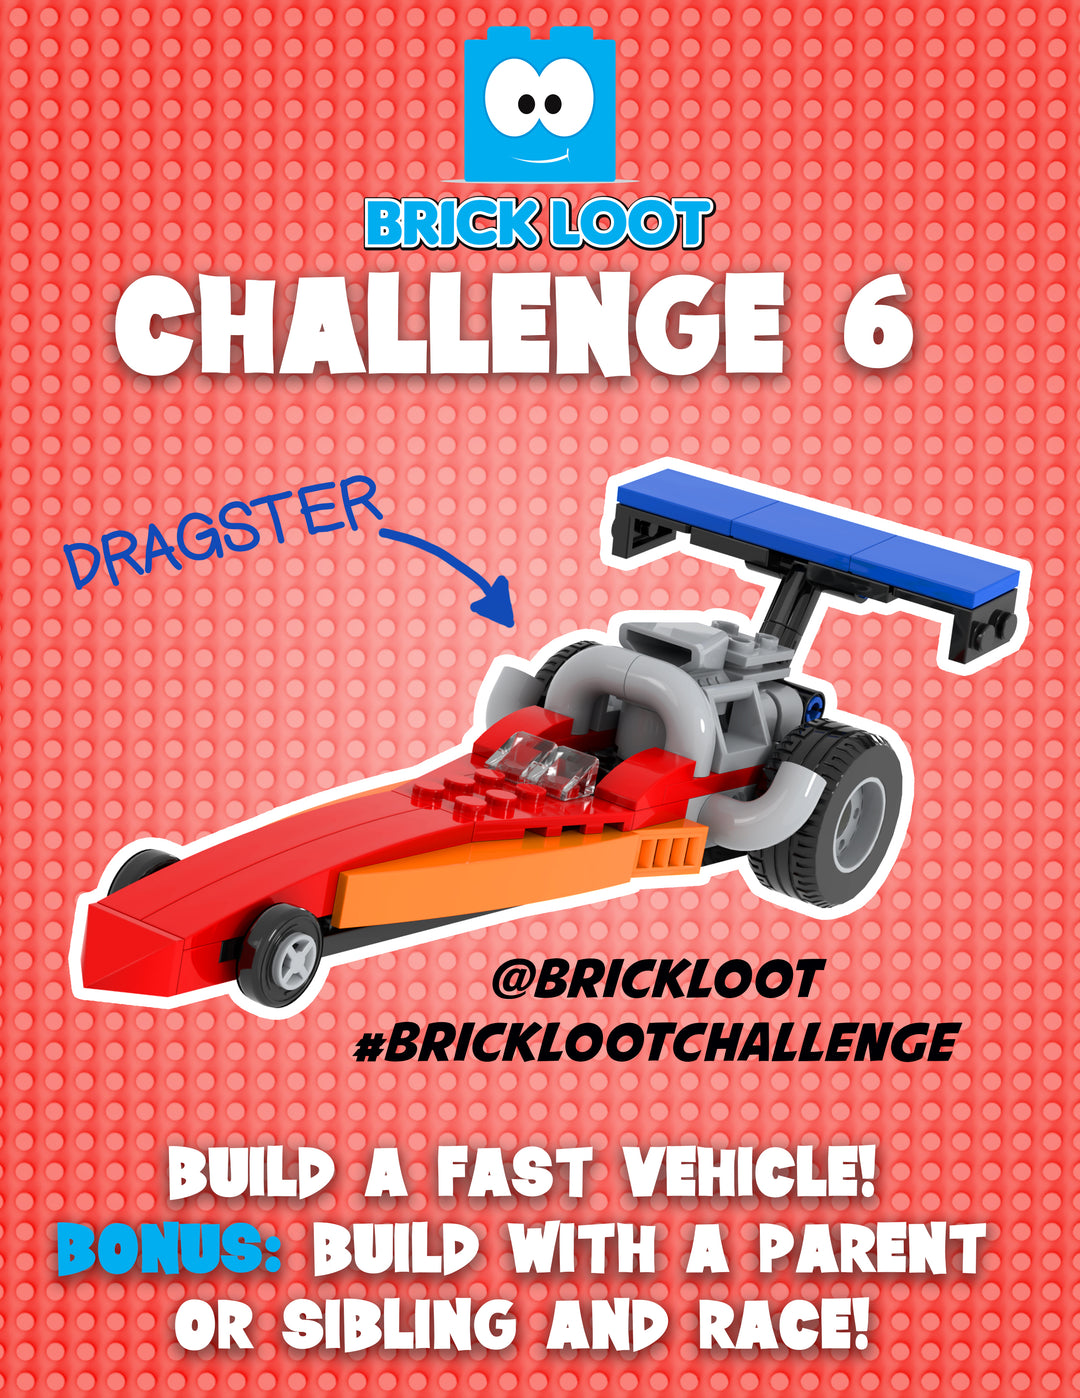 Brick Loot Build Challenge 6